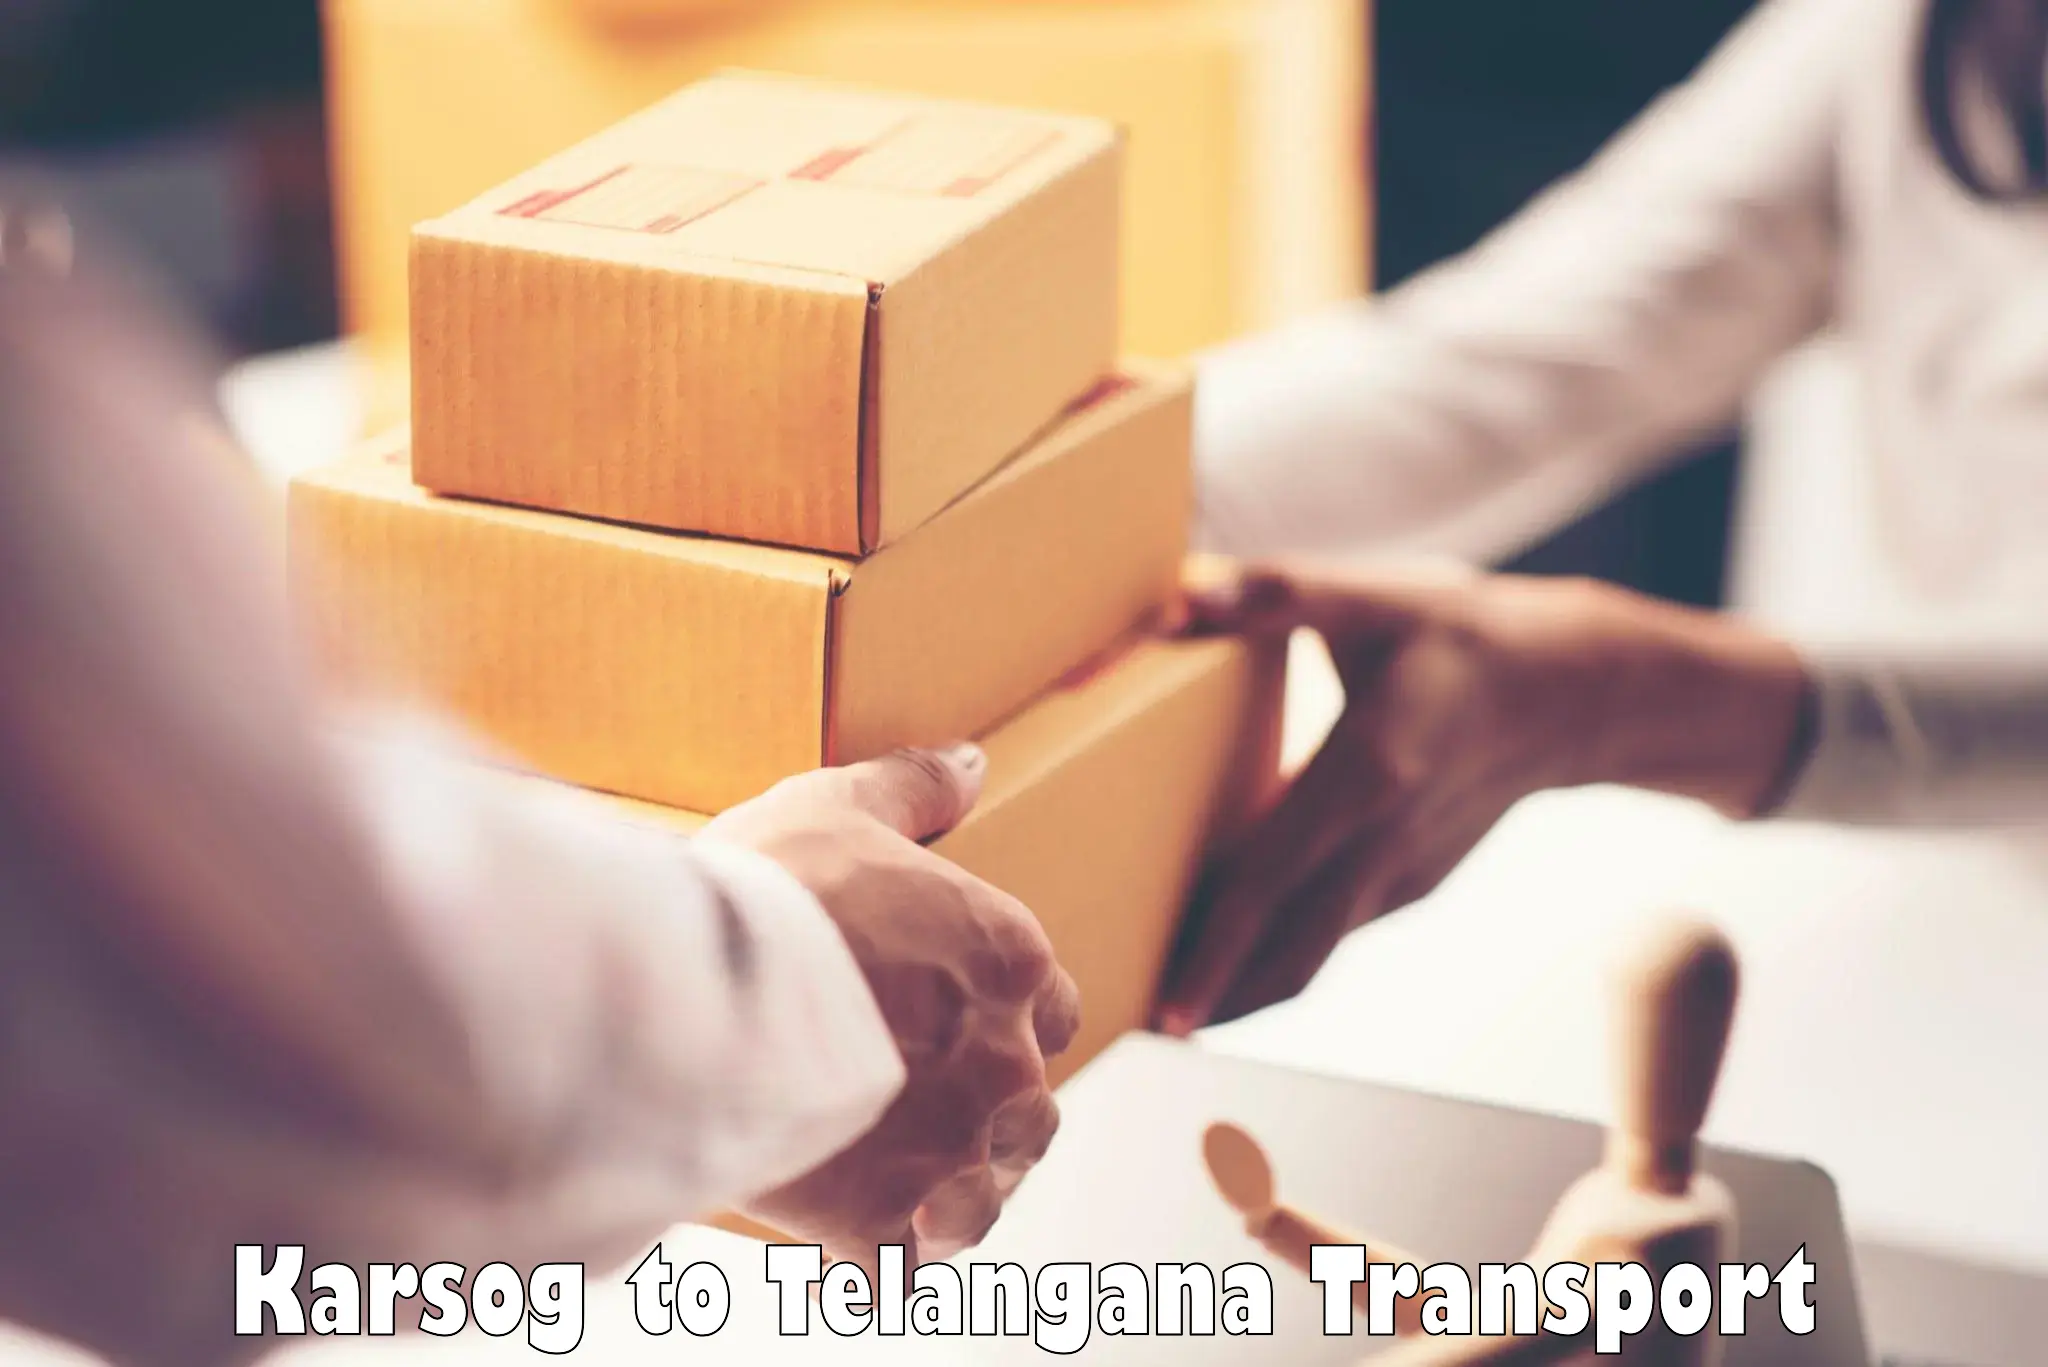 Commercial transport service Karsog to Ibrahimpatnam